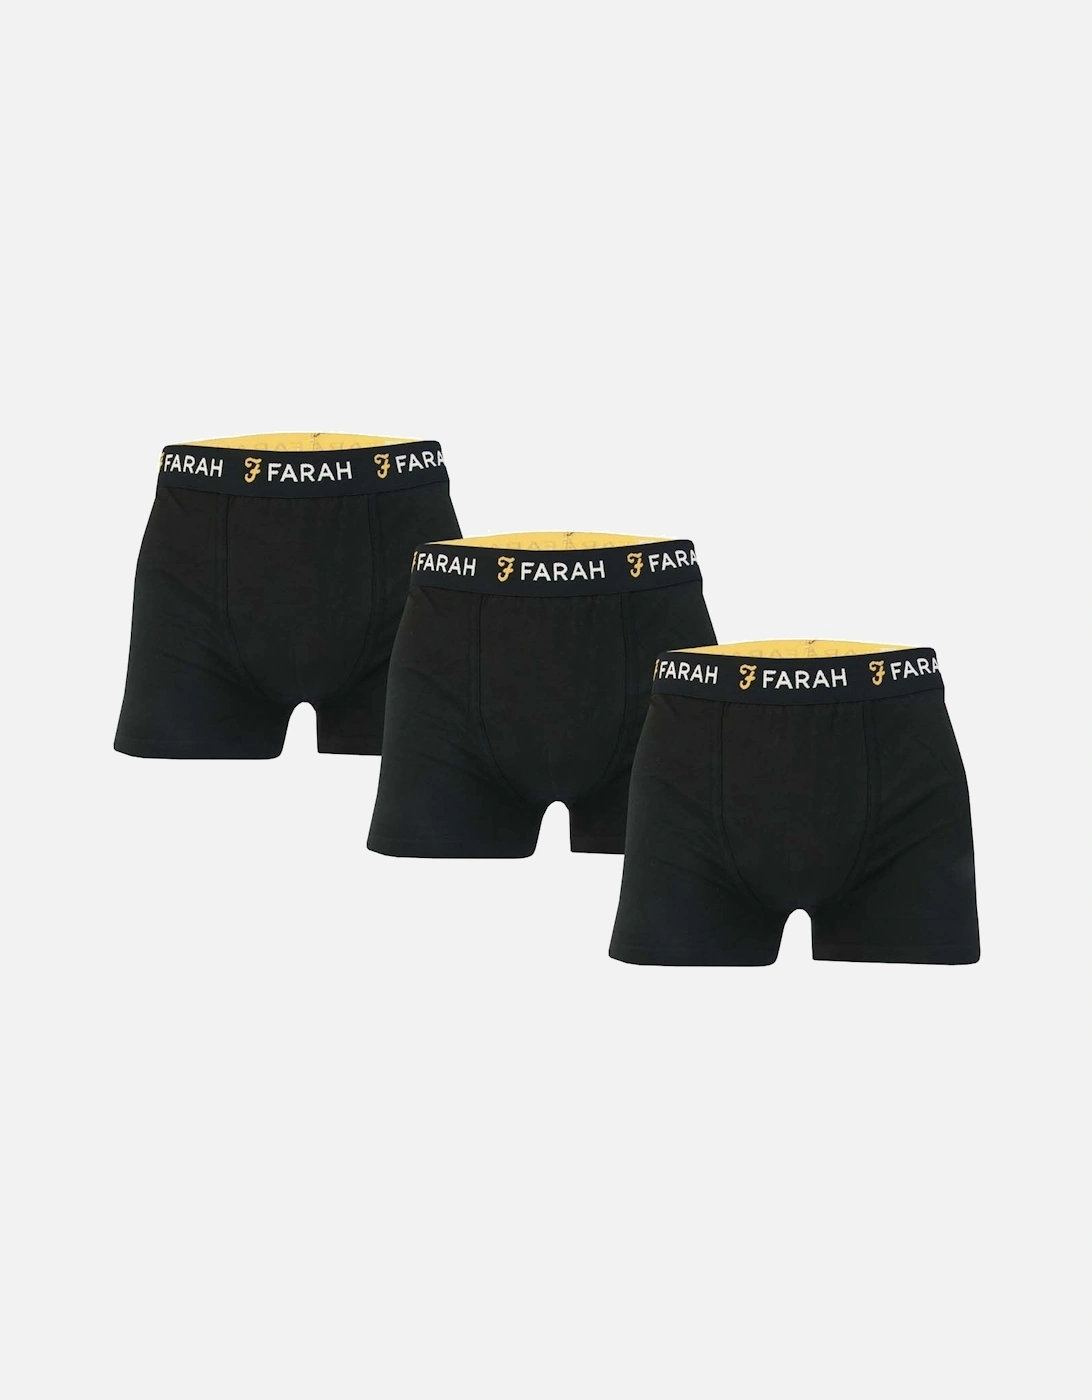 Mens Saginaw 3 Pack Boxer Shorts